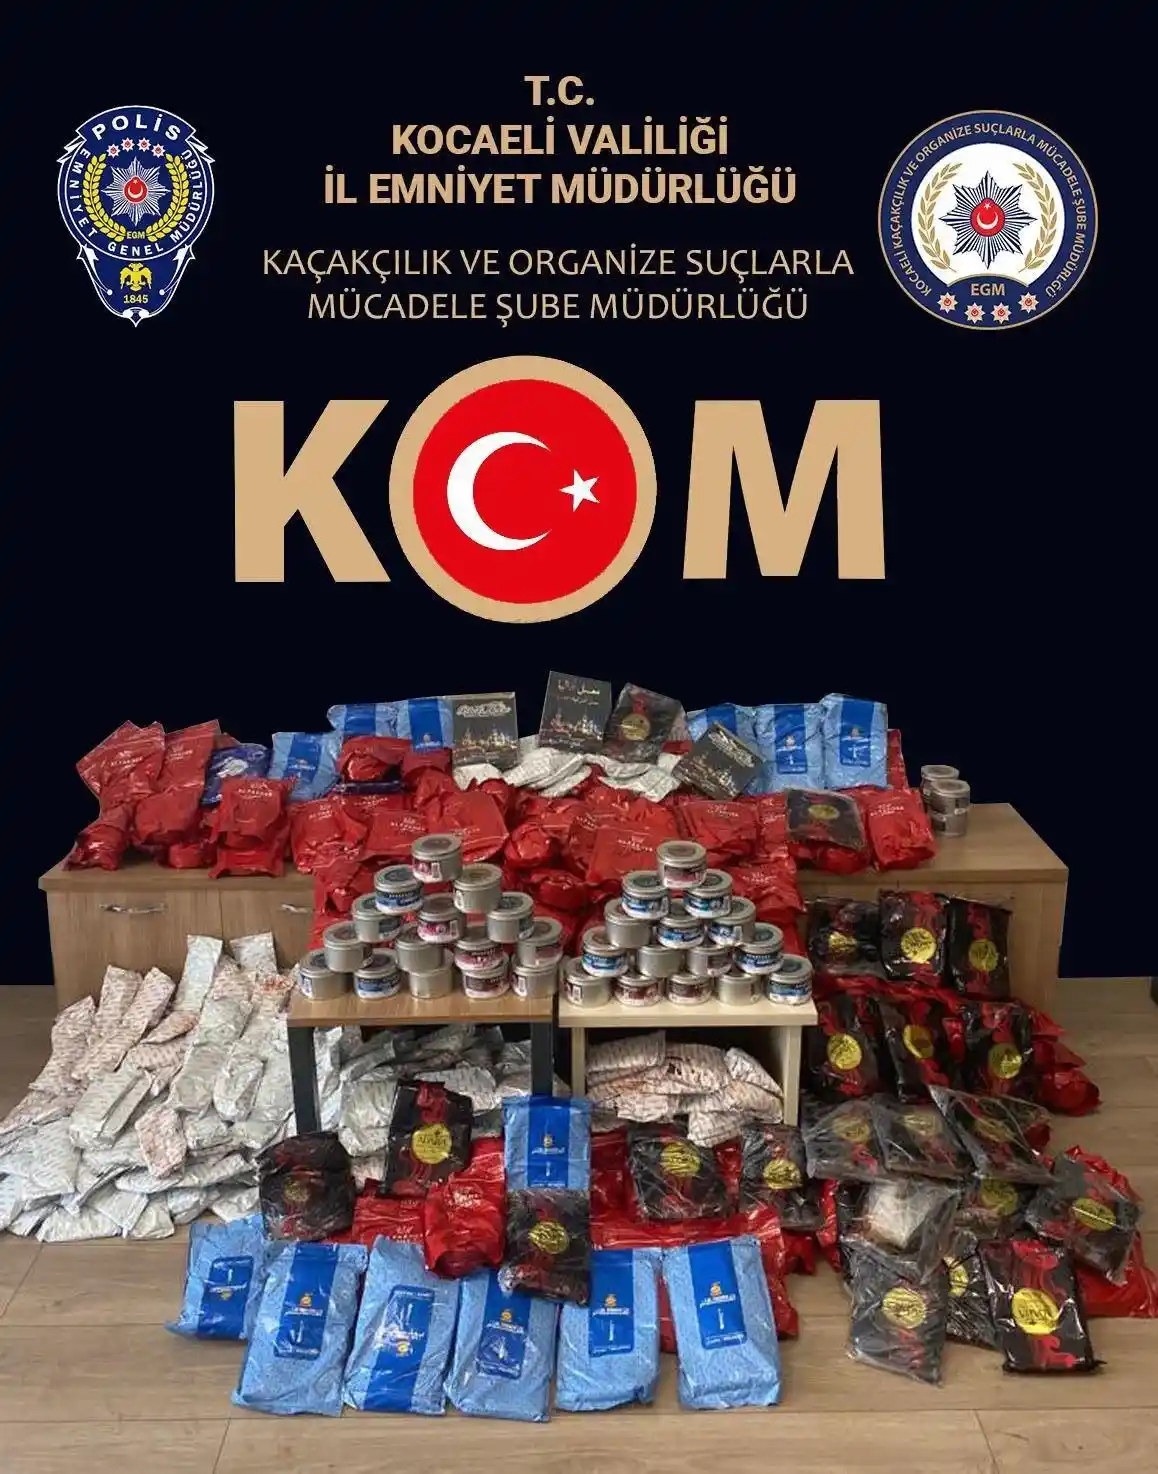 Kocaeli'de 66 gümrük kaçağı parfüm, 360 kilo bandrolsüz nargile tütünü ele geçirildi
